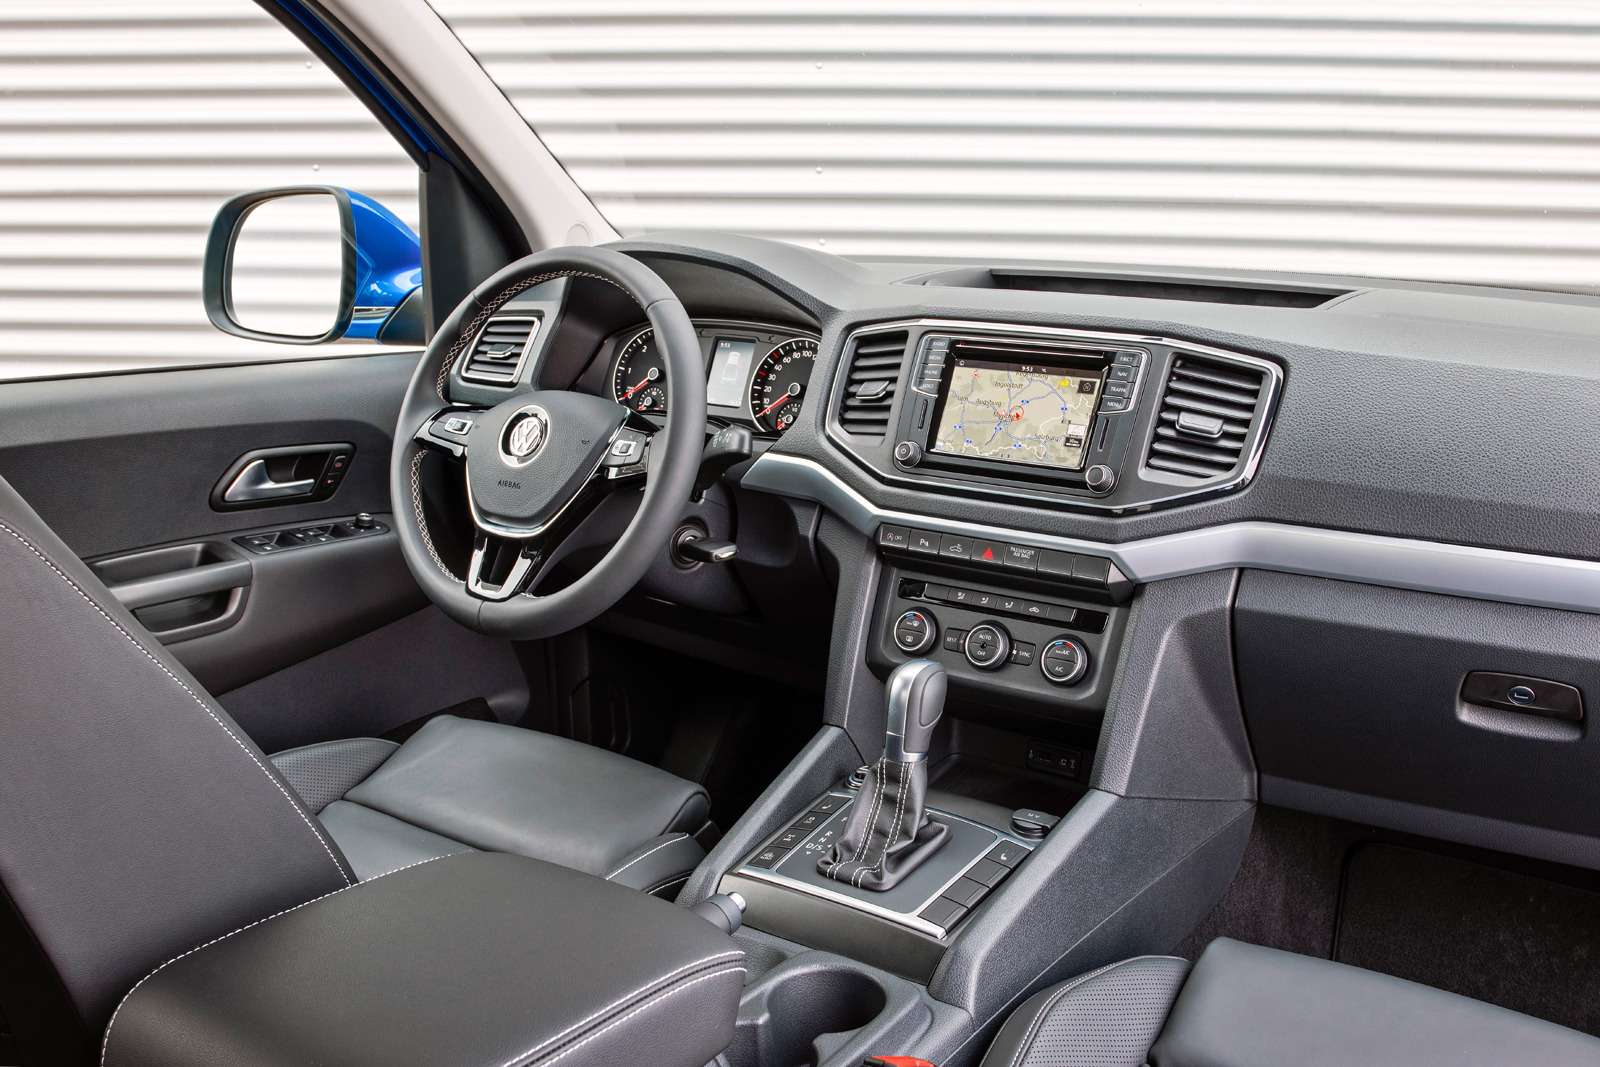 Обновленный Volkswagen Amarok. Переднюю панель освежили. Появился мультифункциональный руль, а для управления мультимедийной системой – сенсорный дисплей. Есть камера заднего вида, передний и задний парктроники.